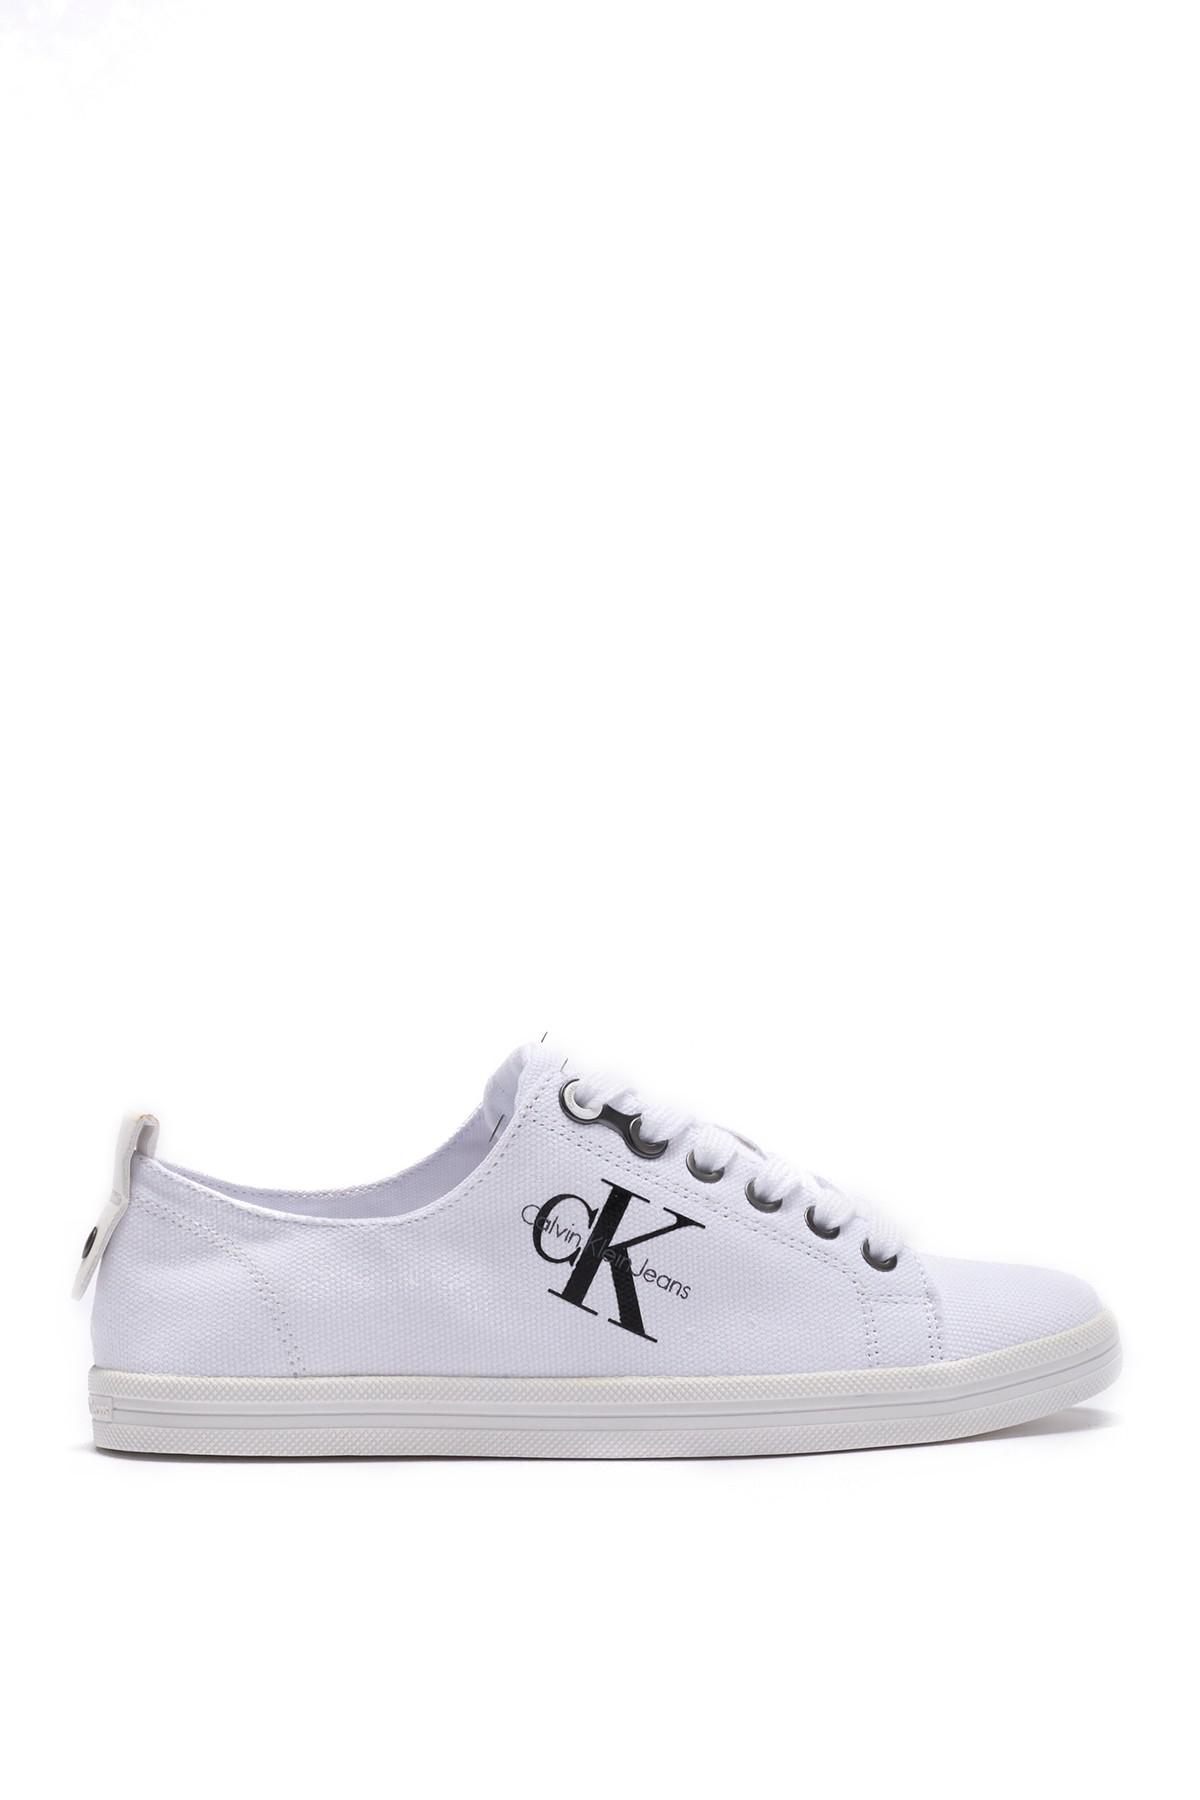 Calvin Klein Monna Canvas Sneaker in White - Lyst